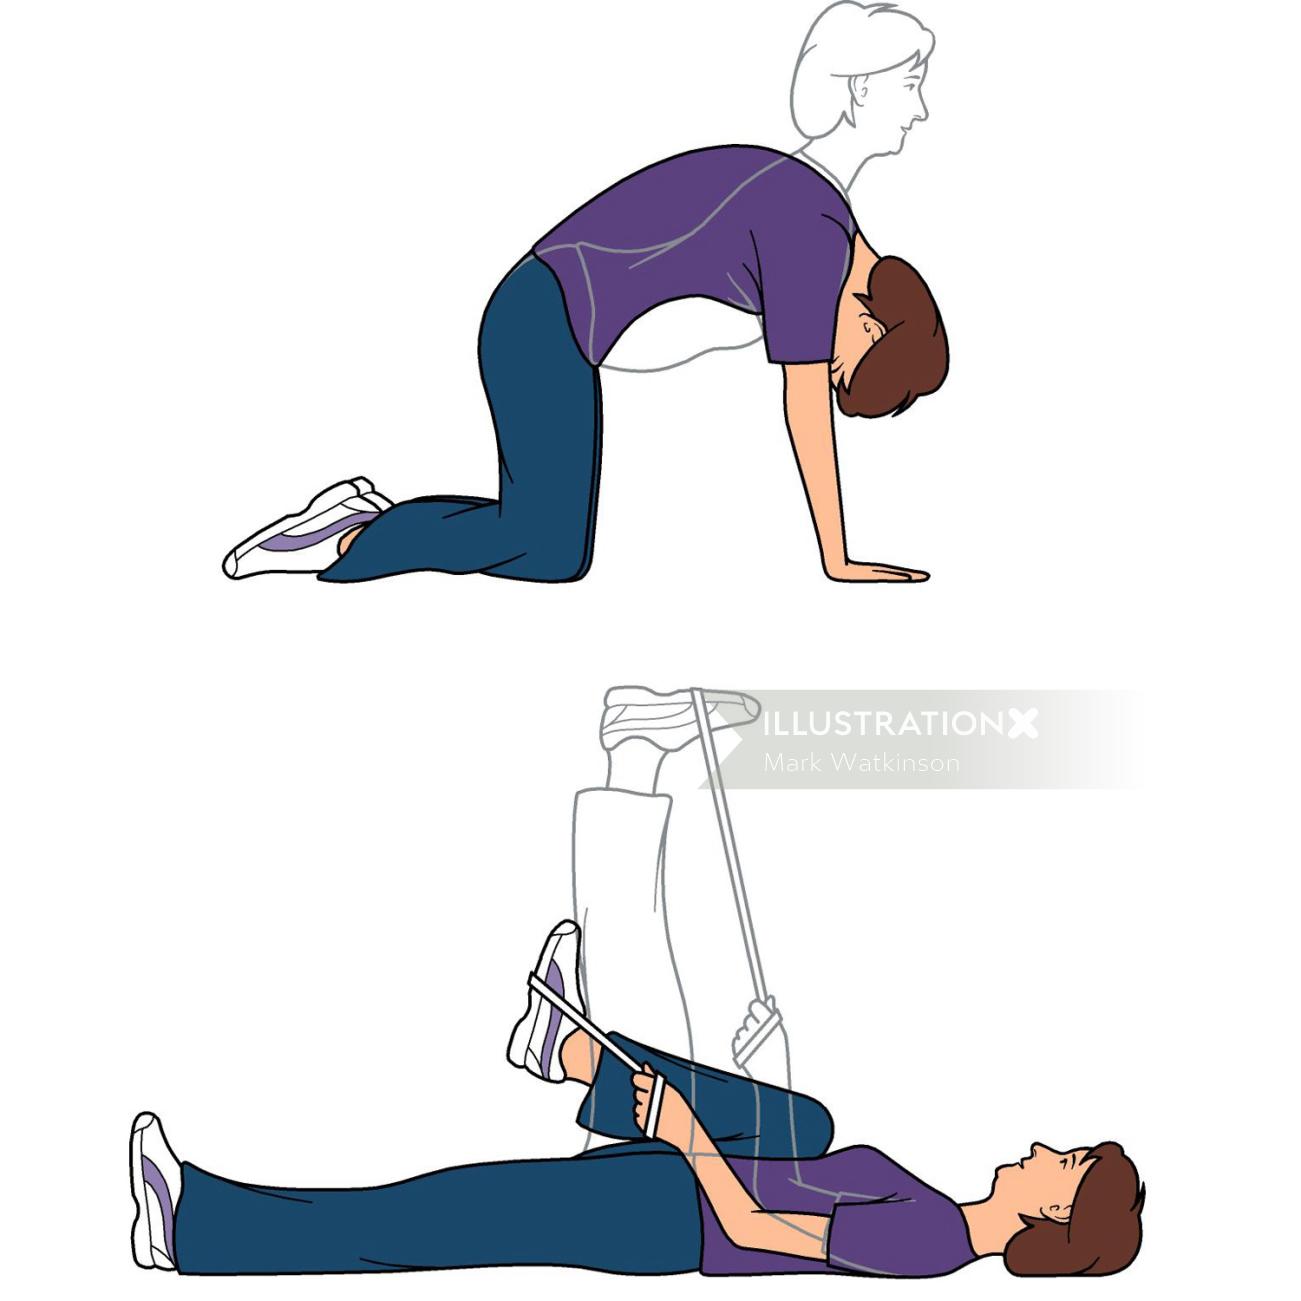 Exercises illustration by Mark Watkinson